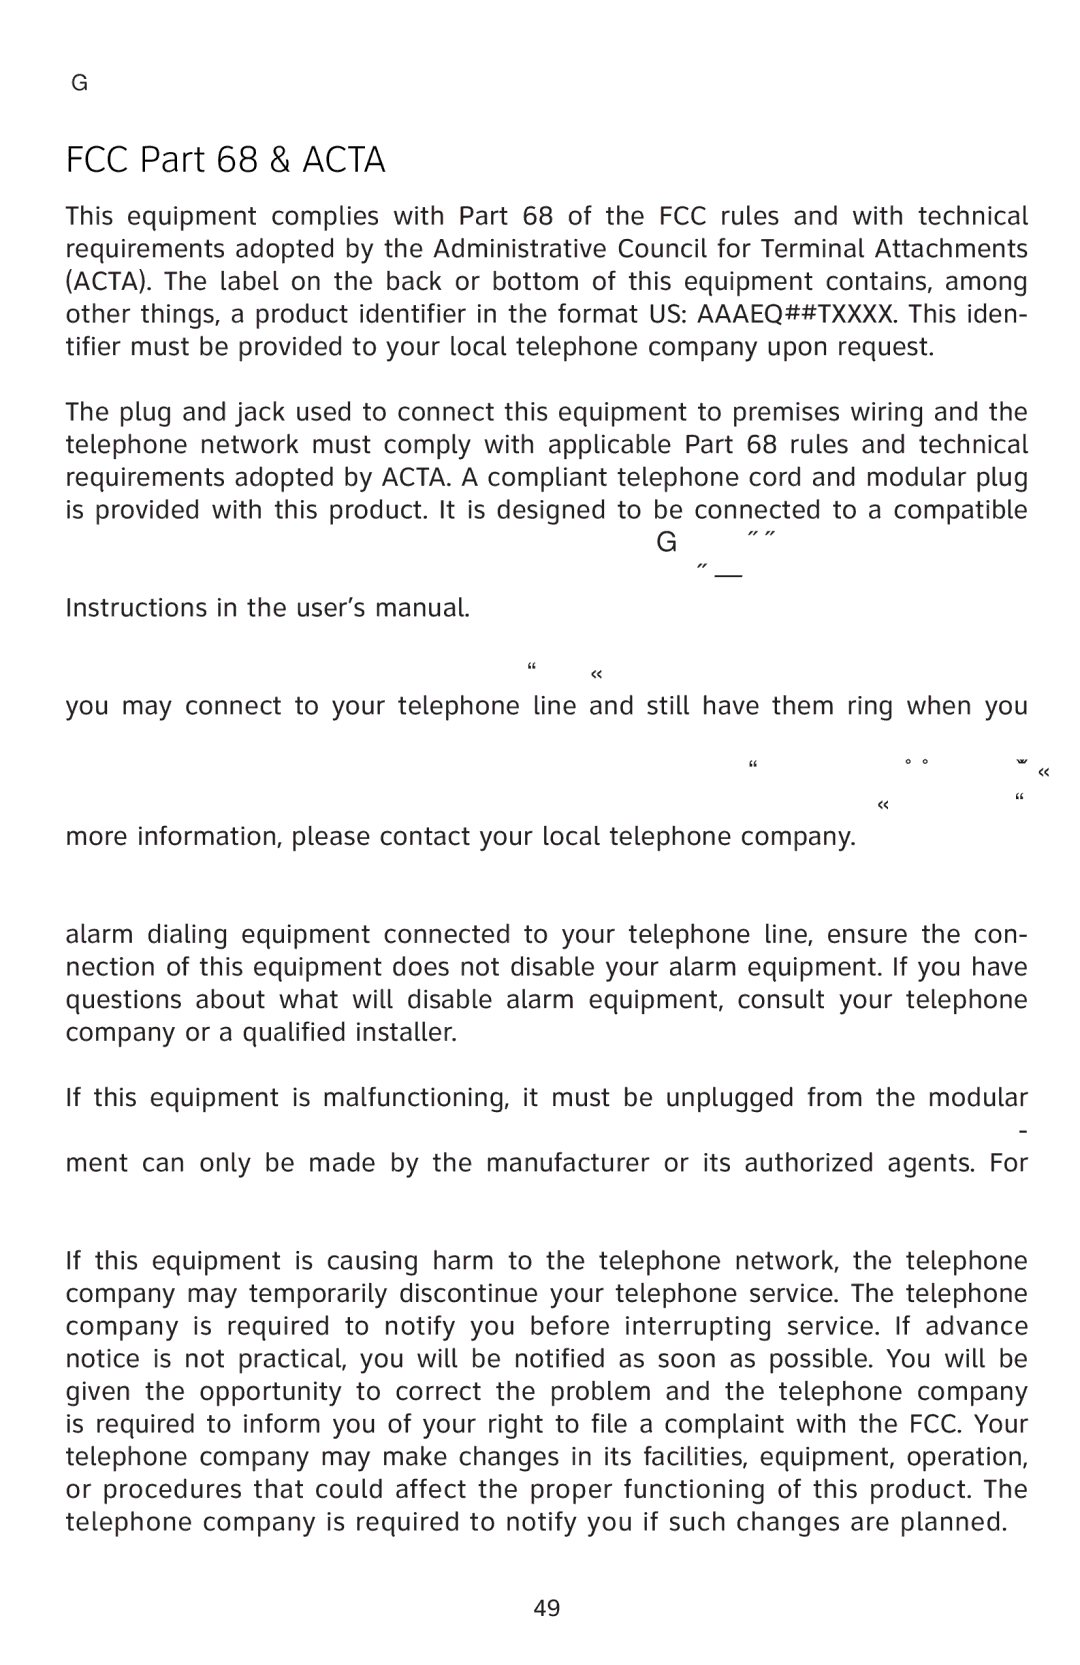 AT&T E5811 user manual FCC Part 68 & Acta 